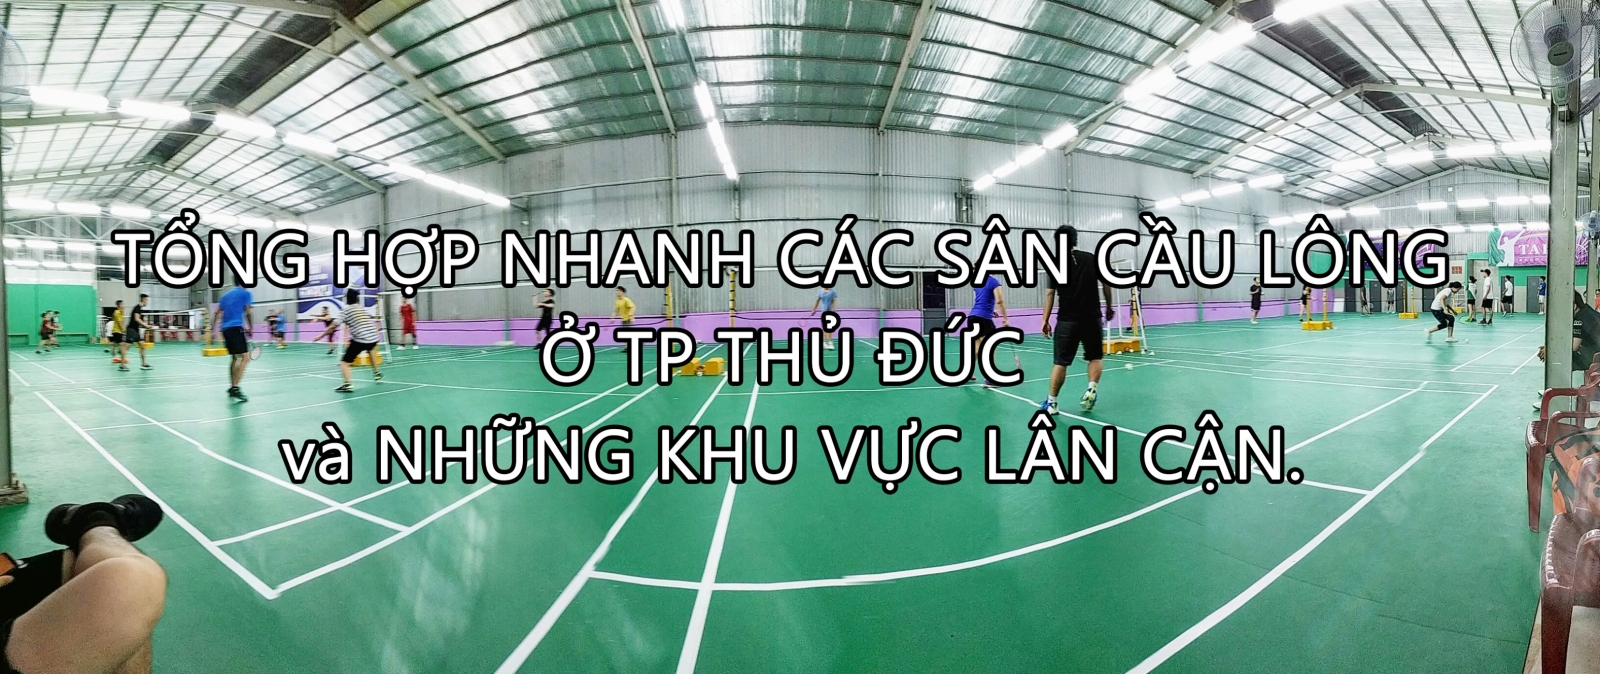 Danh sách sân cầu lông Sài Gòn - Thế Giới Sport